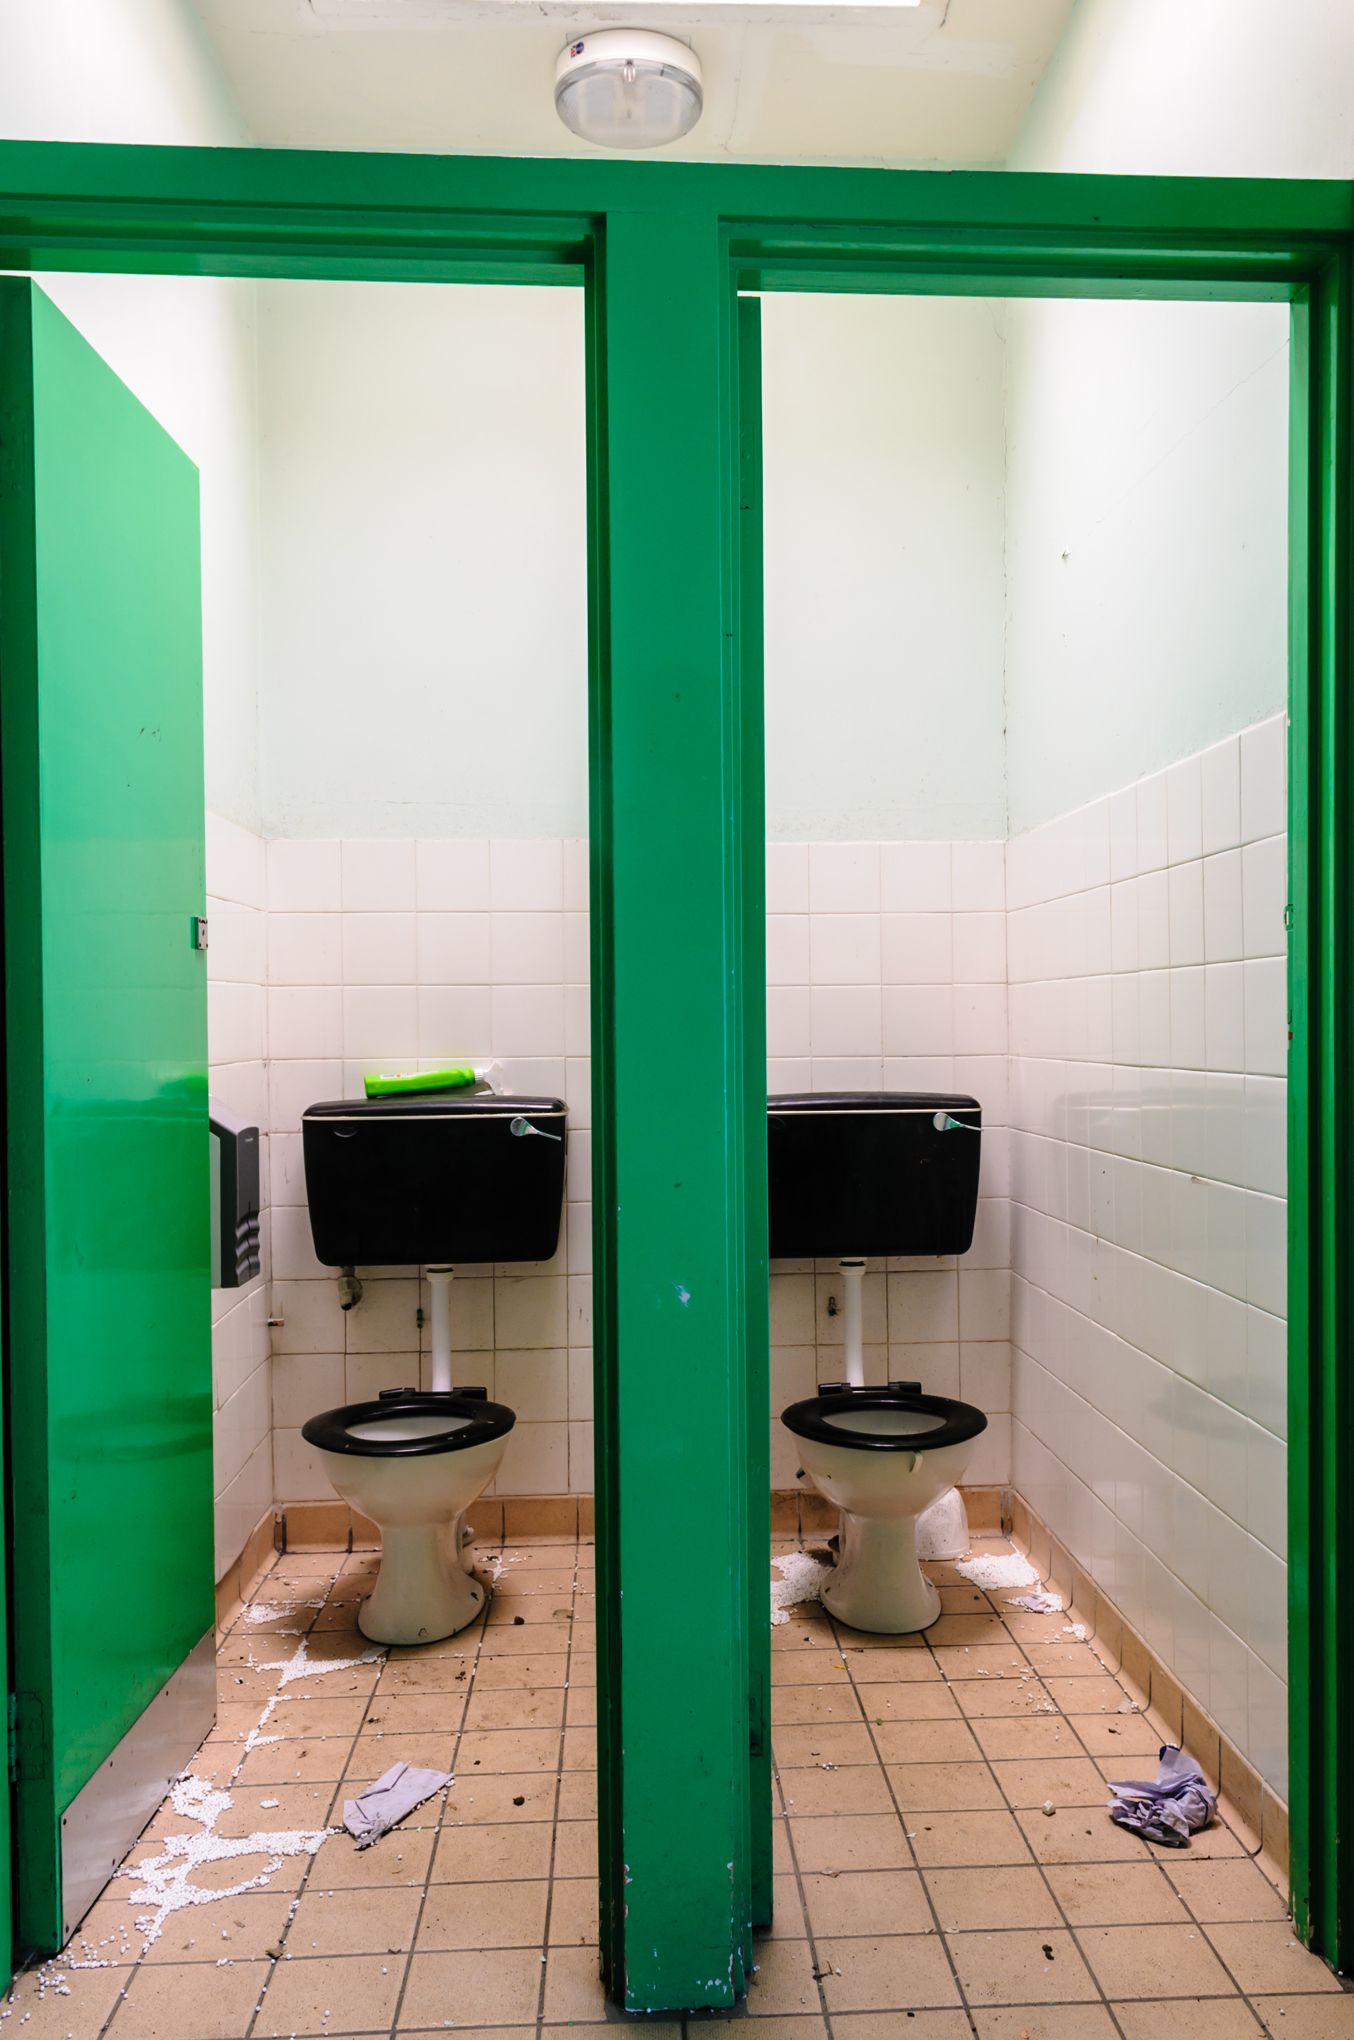 Comment aménager des toilettes pour enfant dans une école ?